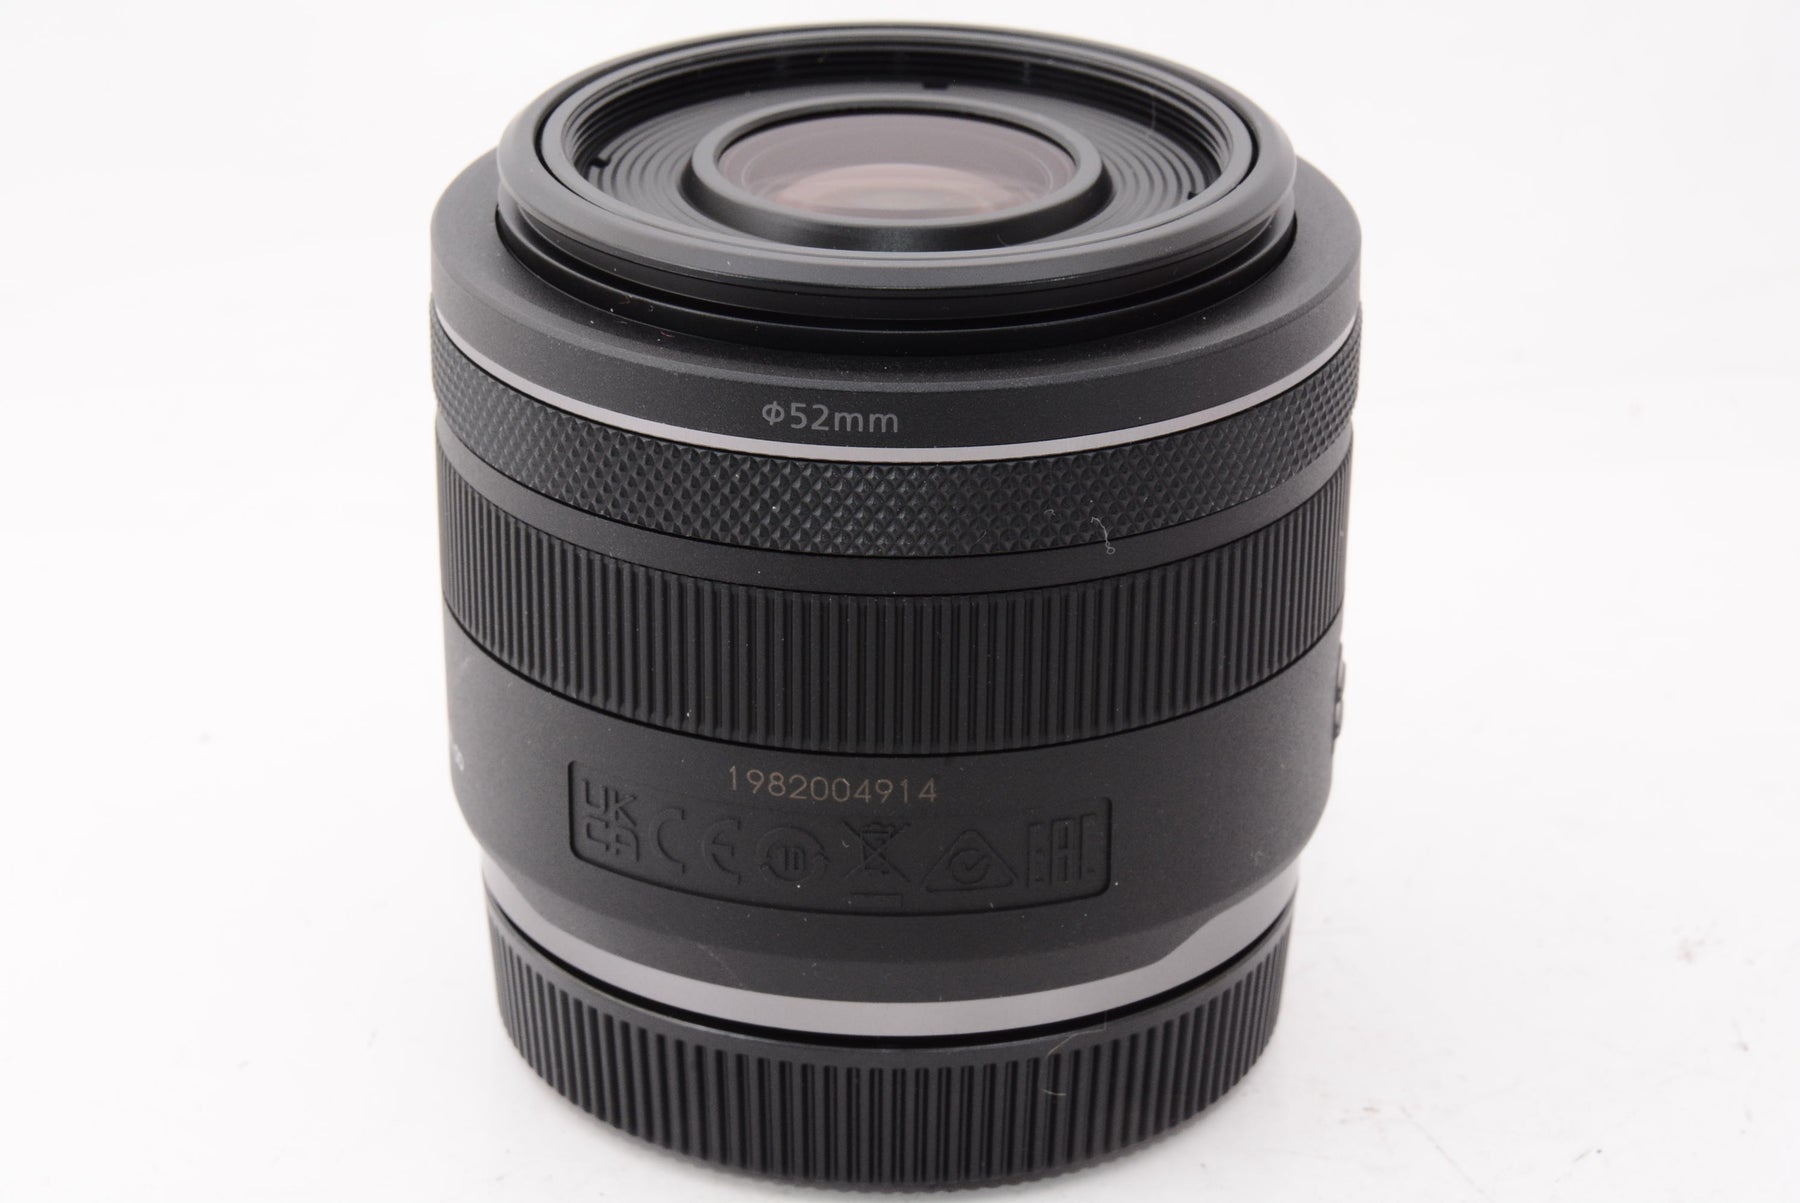 【ほぼ新品】Canon RF 35mm f/1.8 is Macro STM レンズ